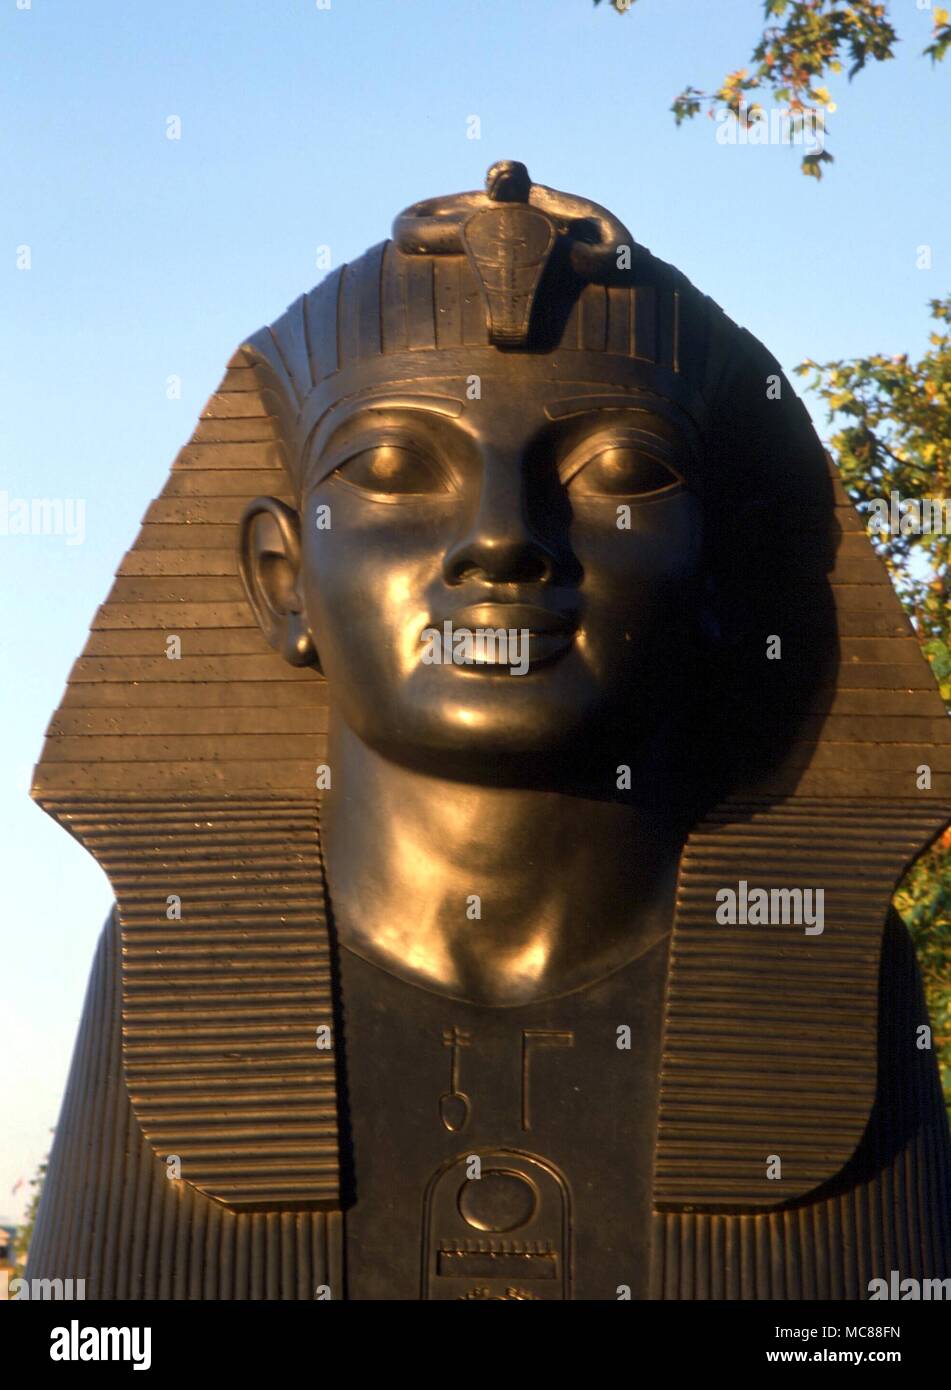 Animaux - Londres - Cleopatra's Needle Chef de l'un des deux sphinx sur Cleopatra's Needle (fleuve) au lever du soleil Banque D'Images